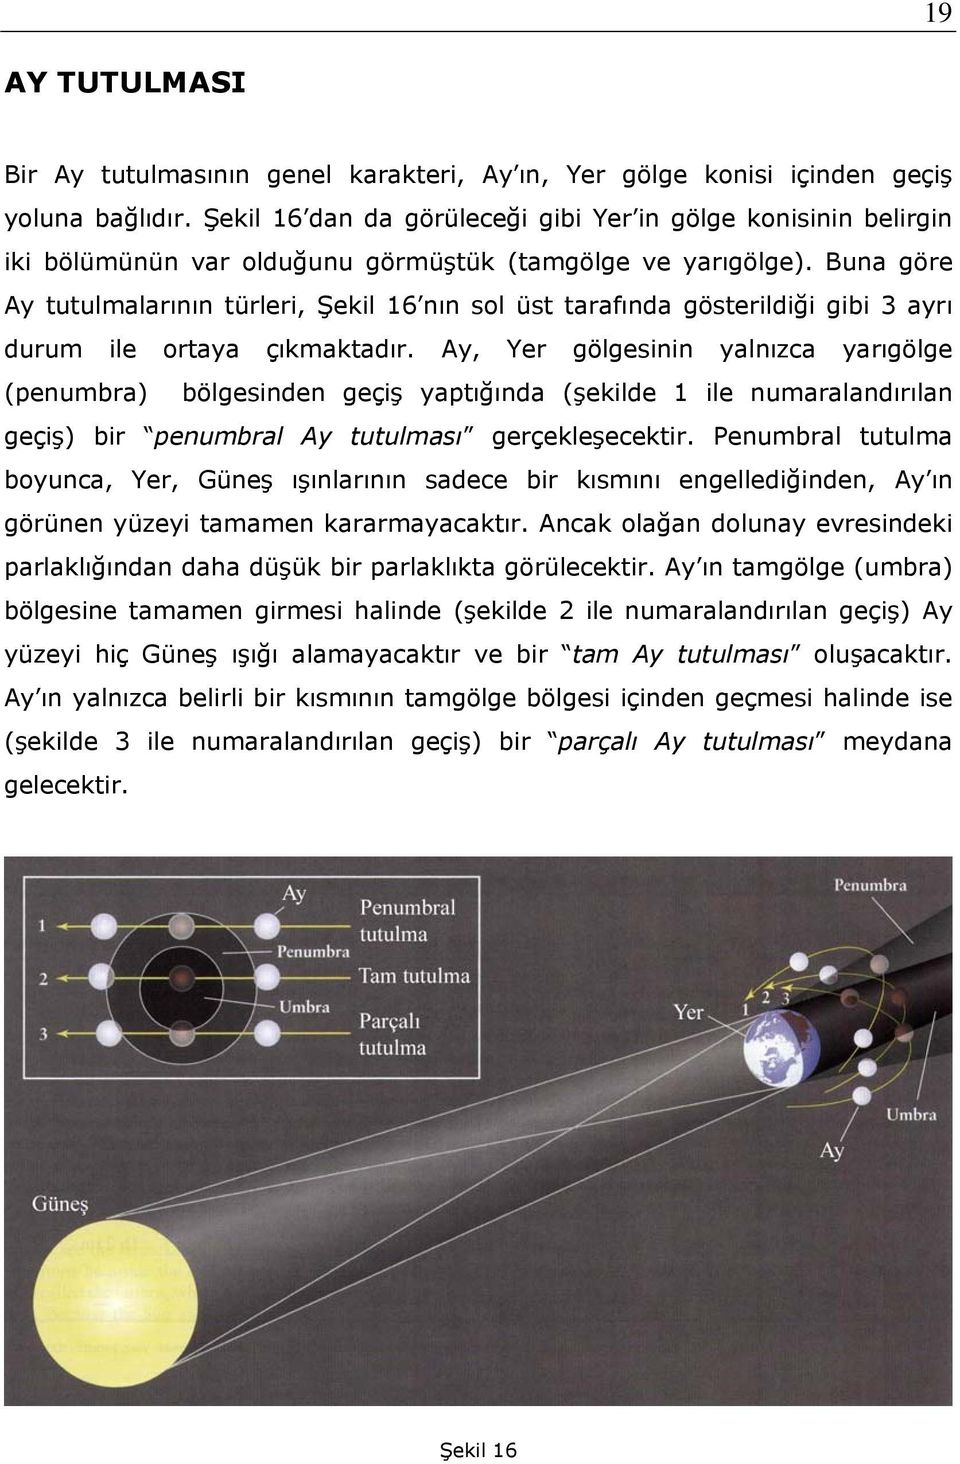 Buna göre Ay tutulmalarının türleri, Şekil 16 nın sol üst tarafında gösterildiği gibi 3 ayrı durum ile ortaya çıkmaktadır.